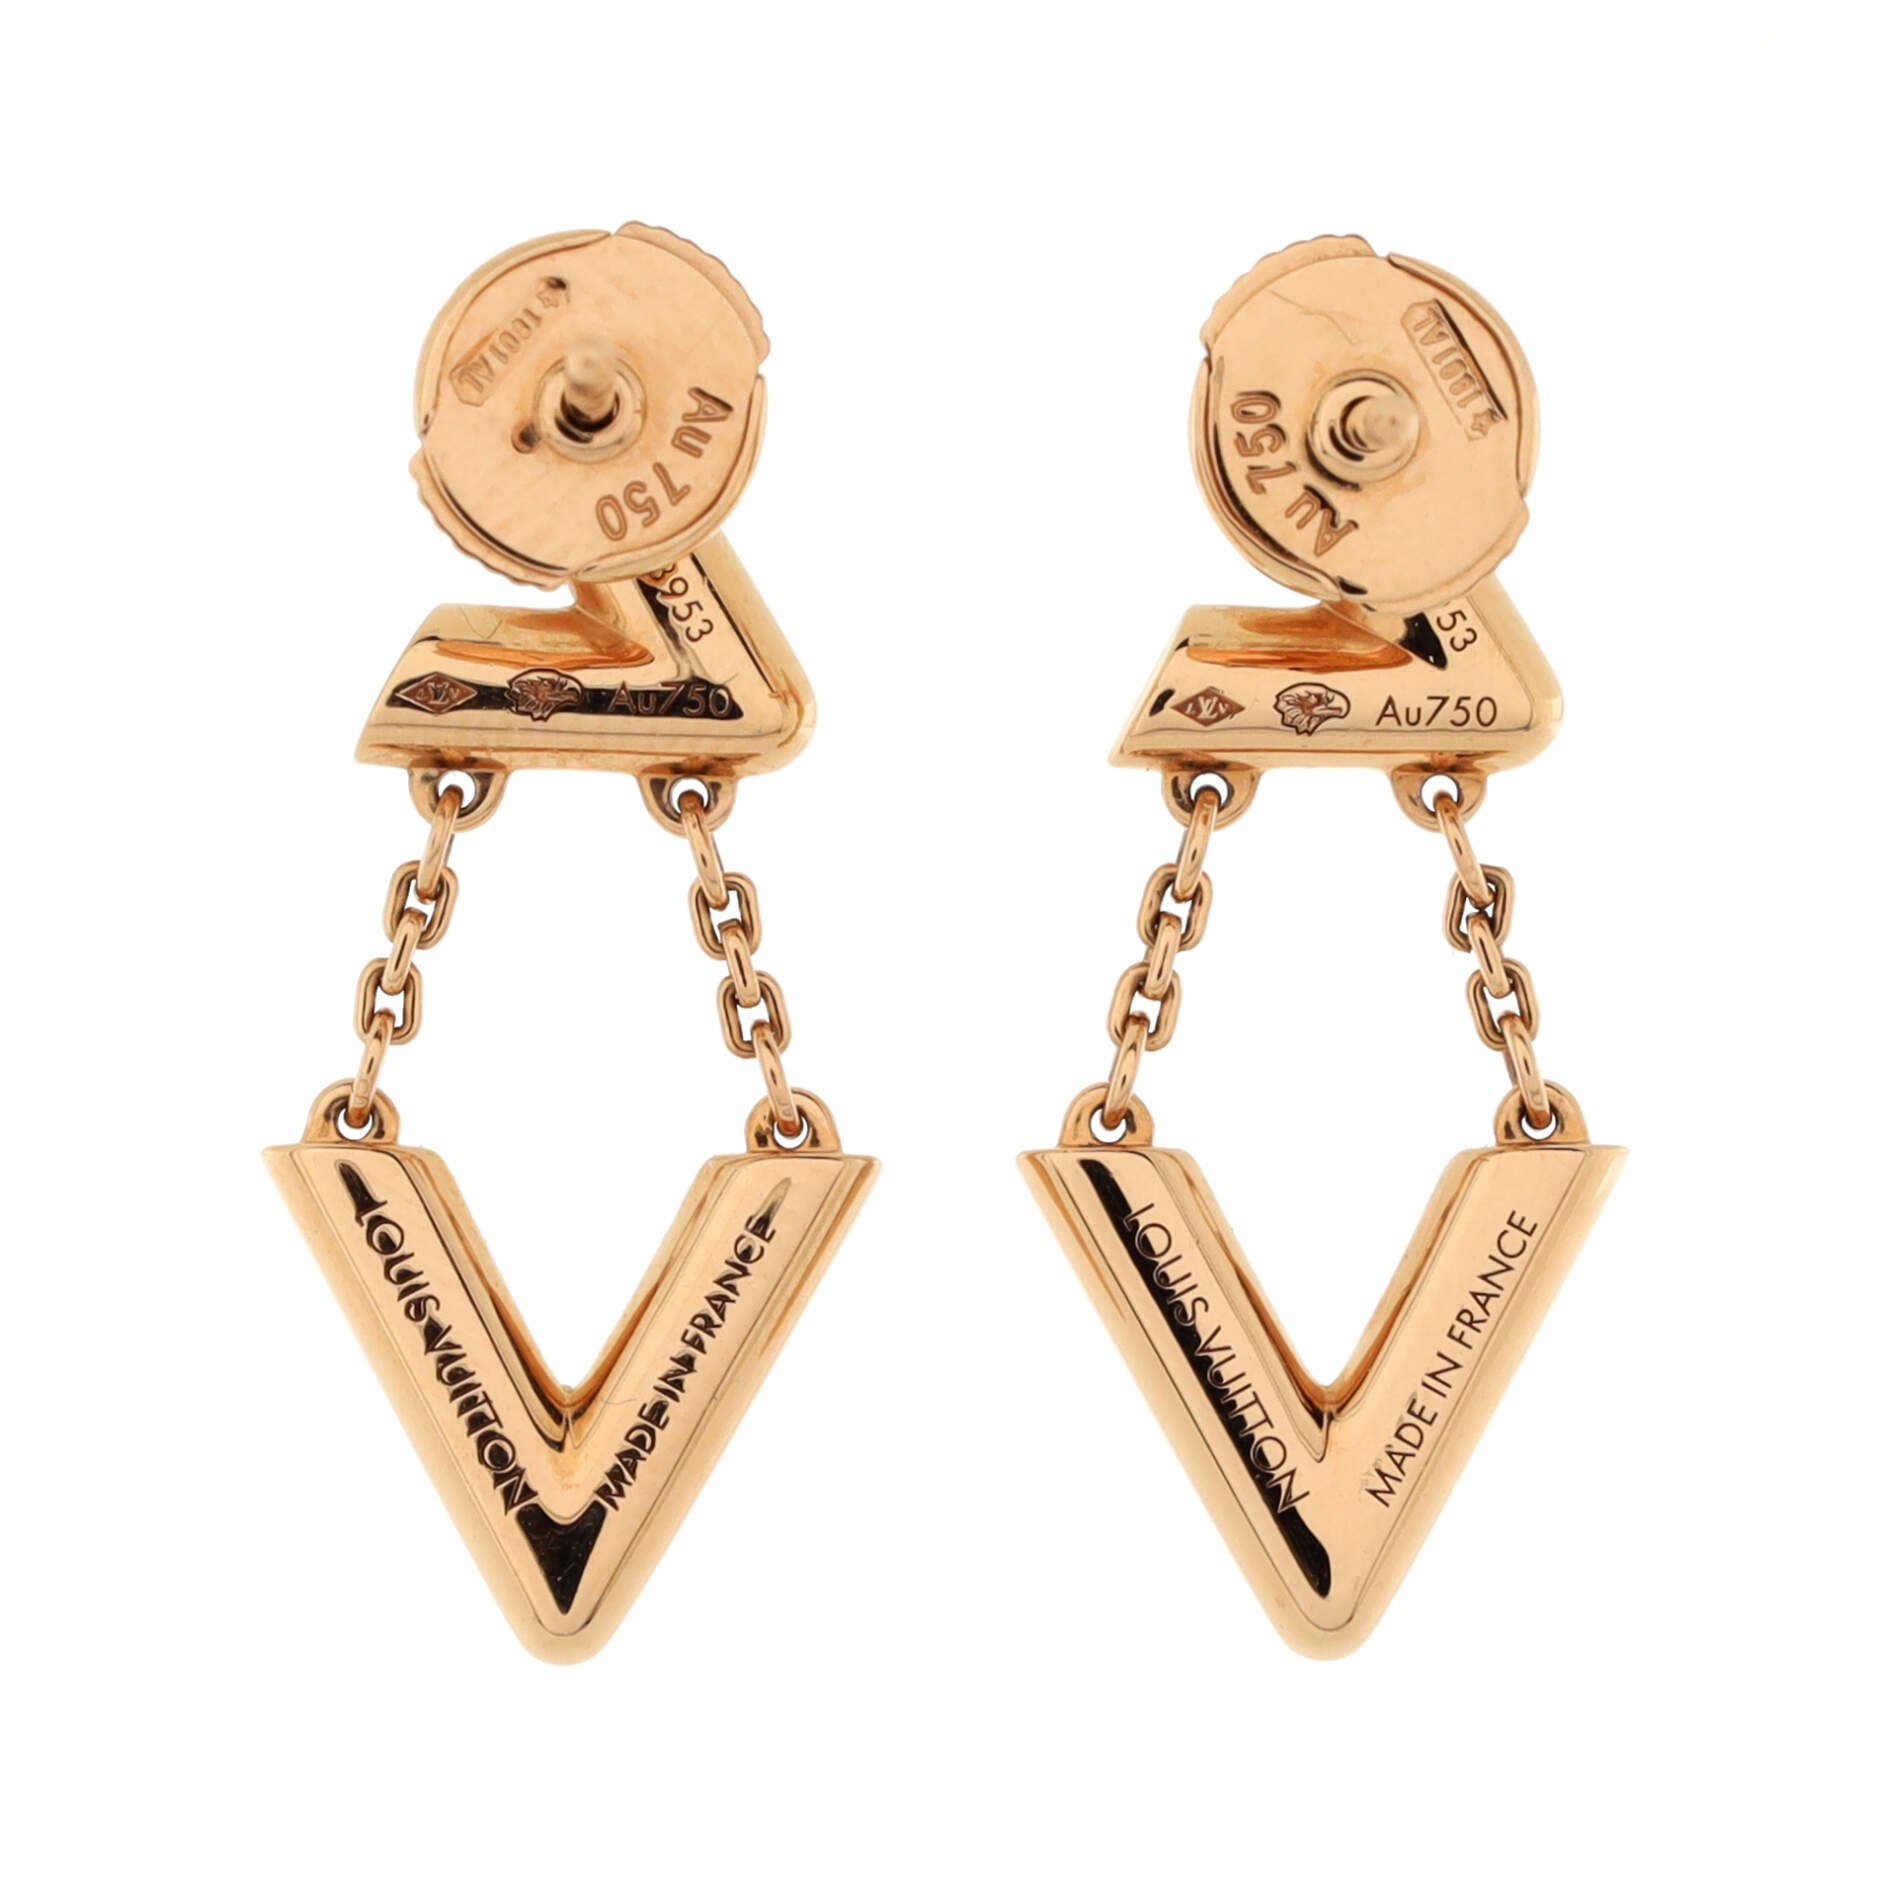 Blooming earrings Louis Vuitton Gold in Metal - 34124051